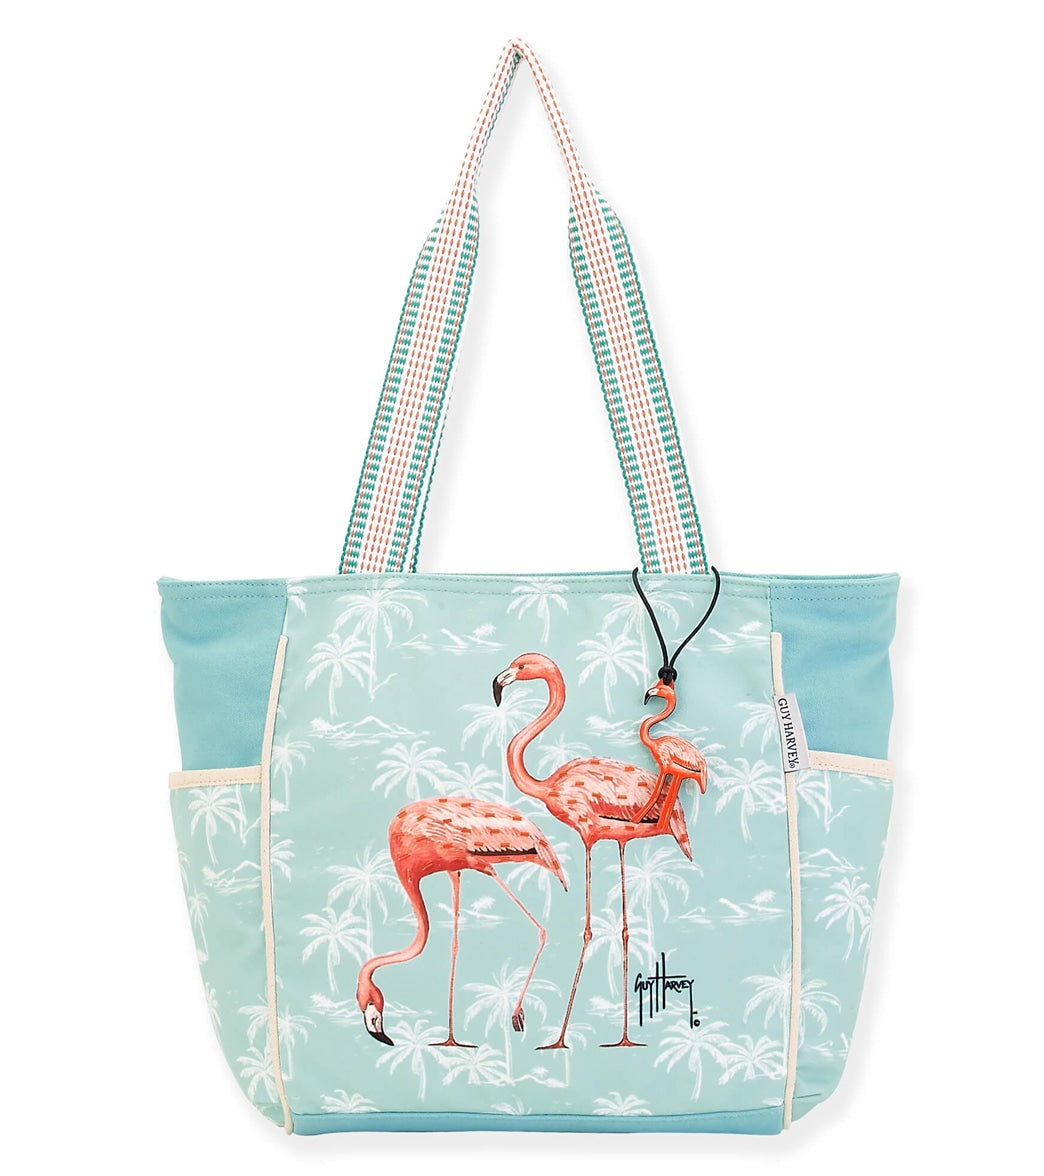 Flamingo Bag Tutorial/ Cute Tote BagDIY - YouTube